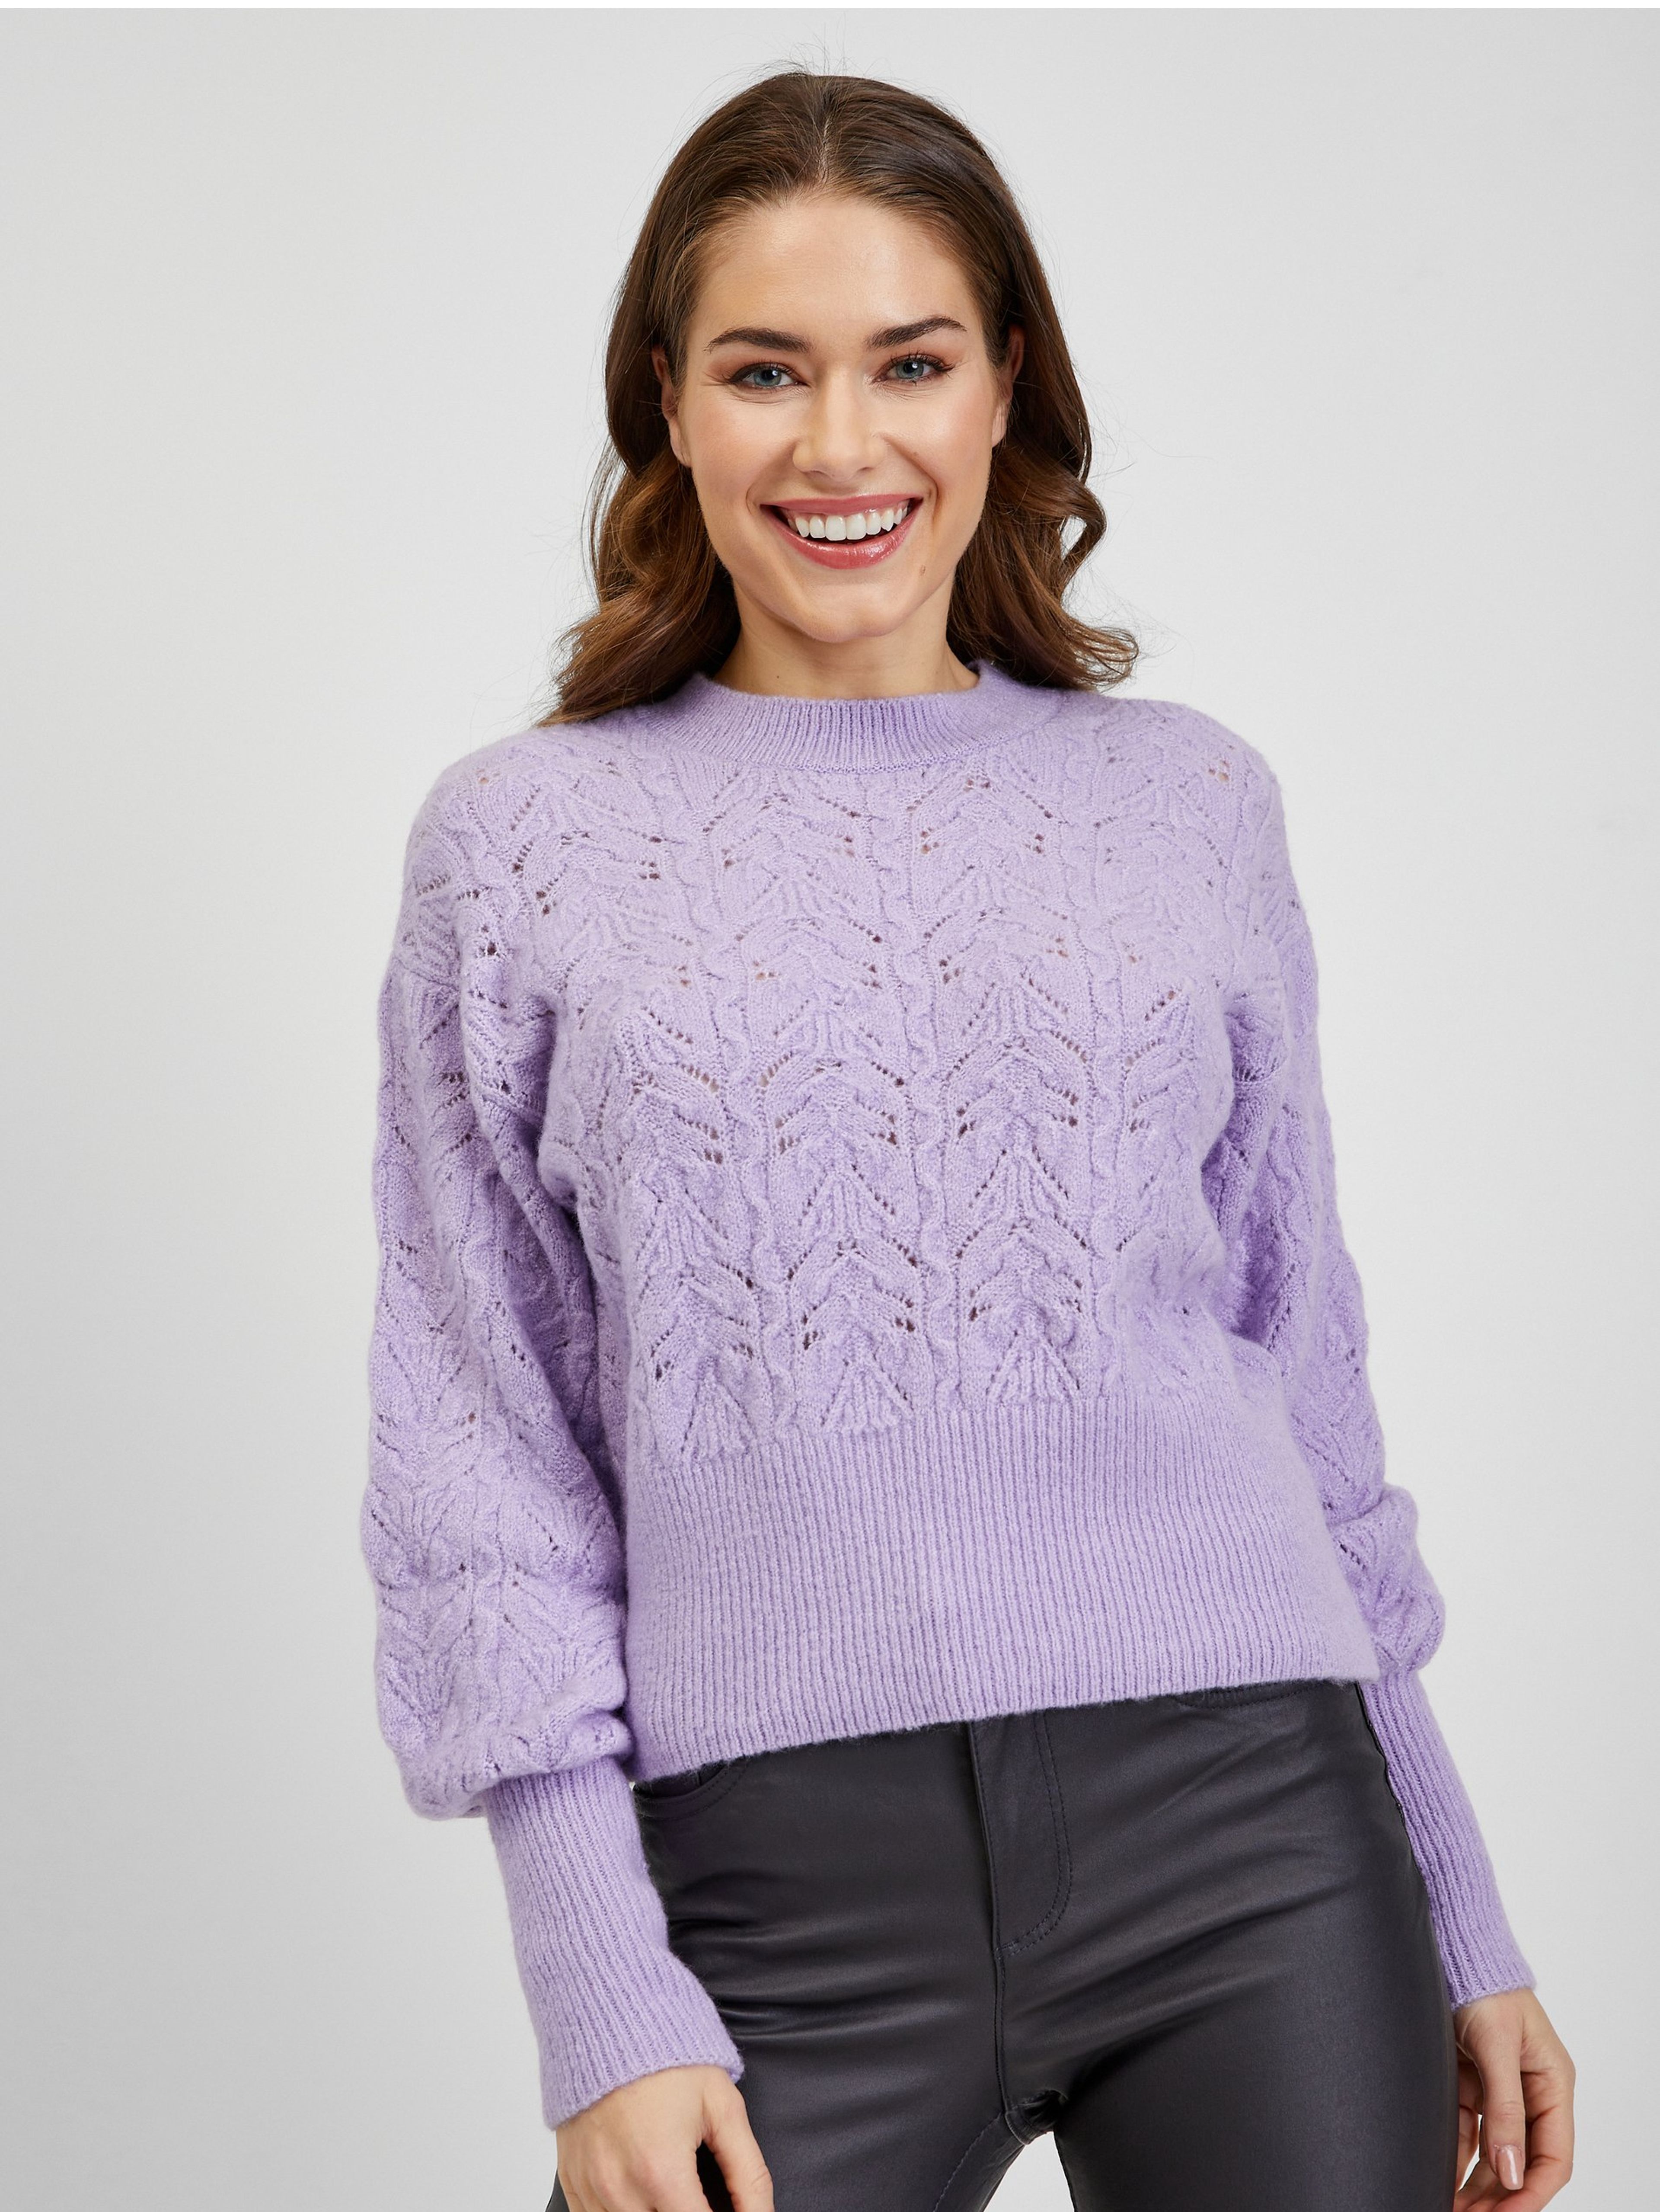 Jasnofioletowy, wzorzysty sweter damski z bufiastymi rękawami ORSAY